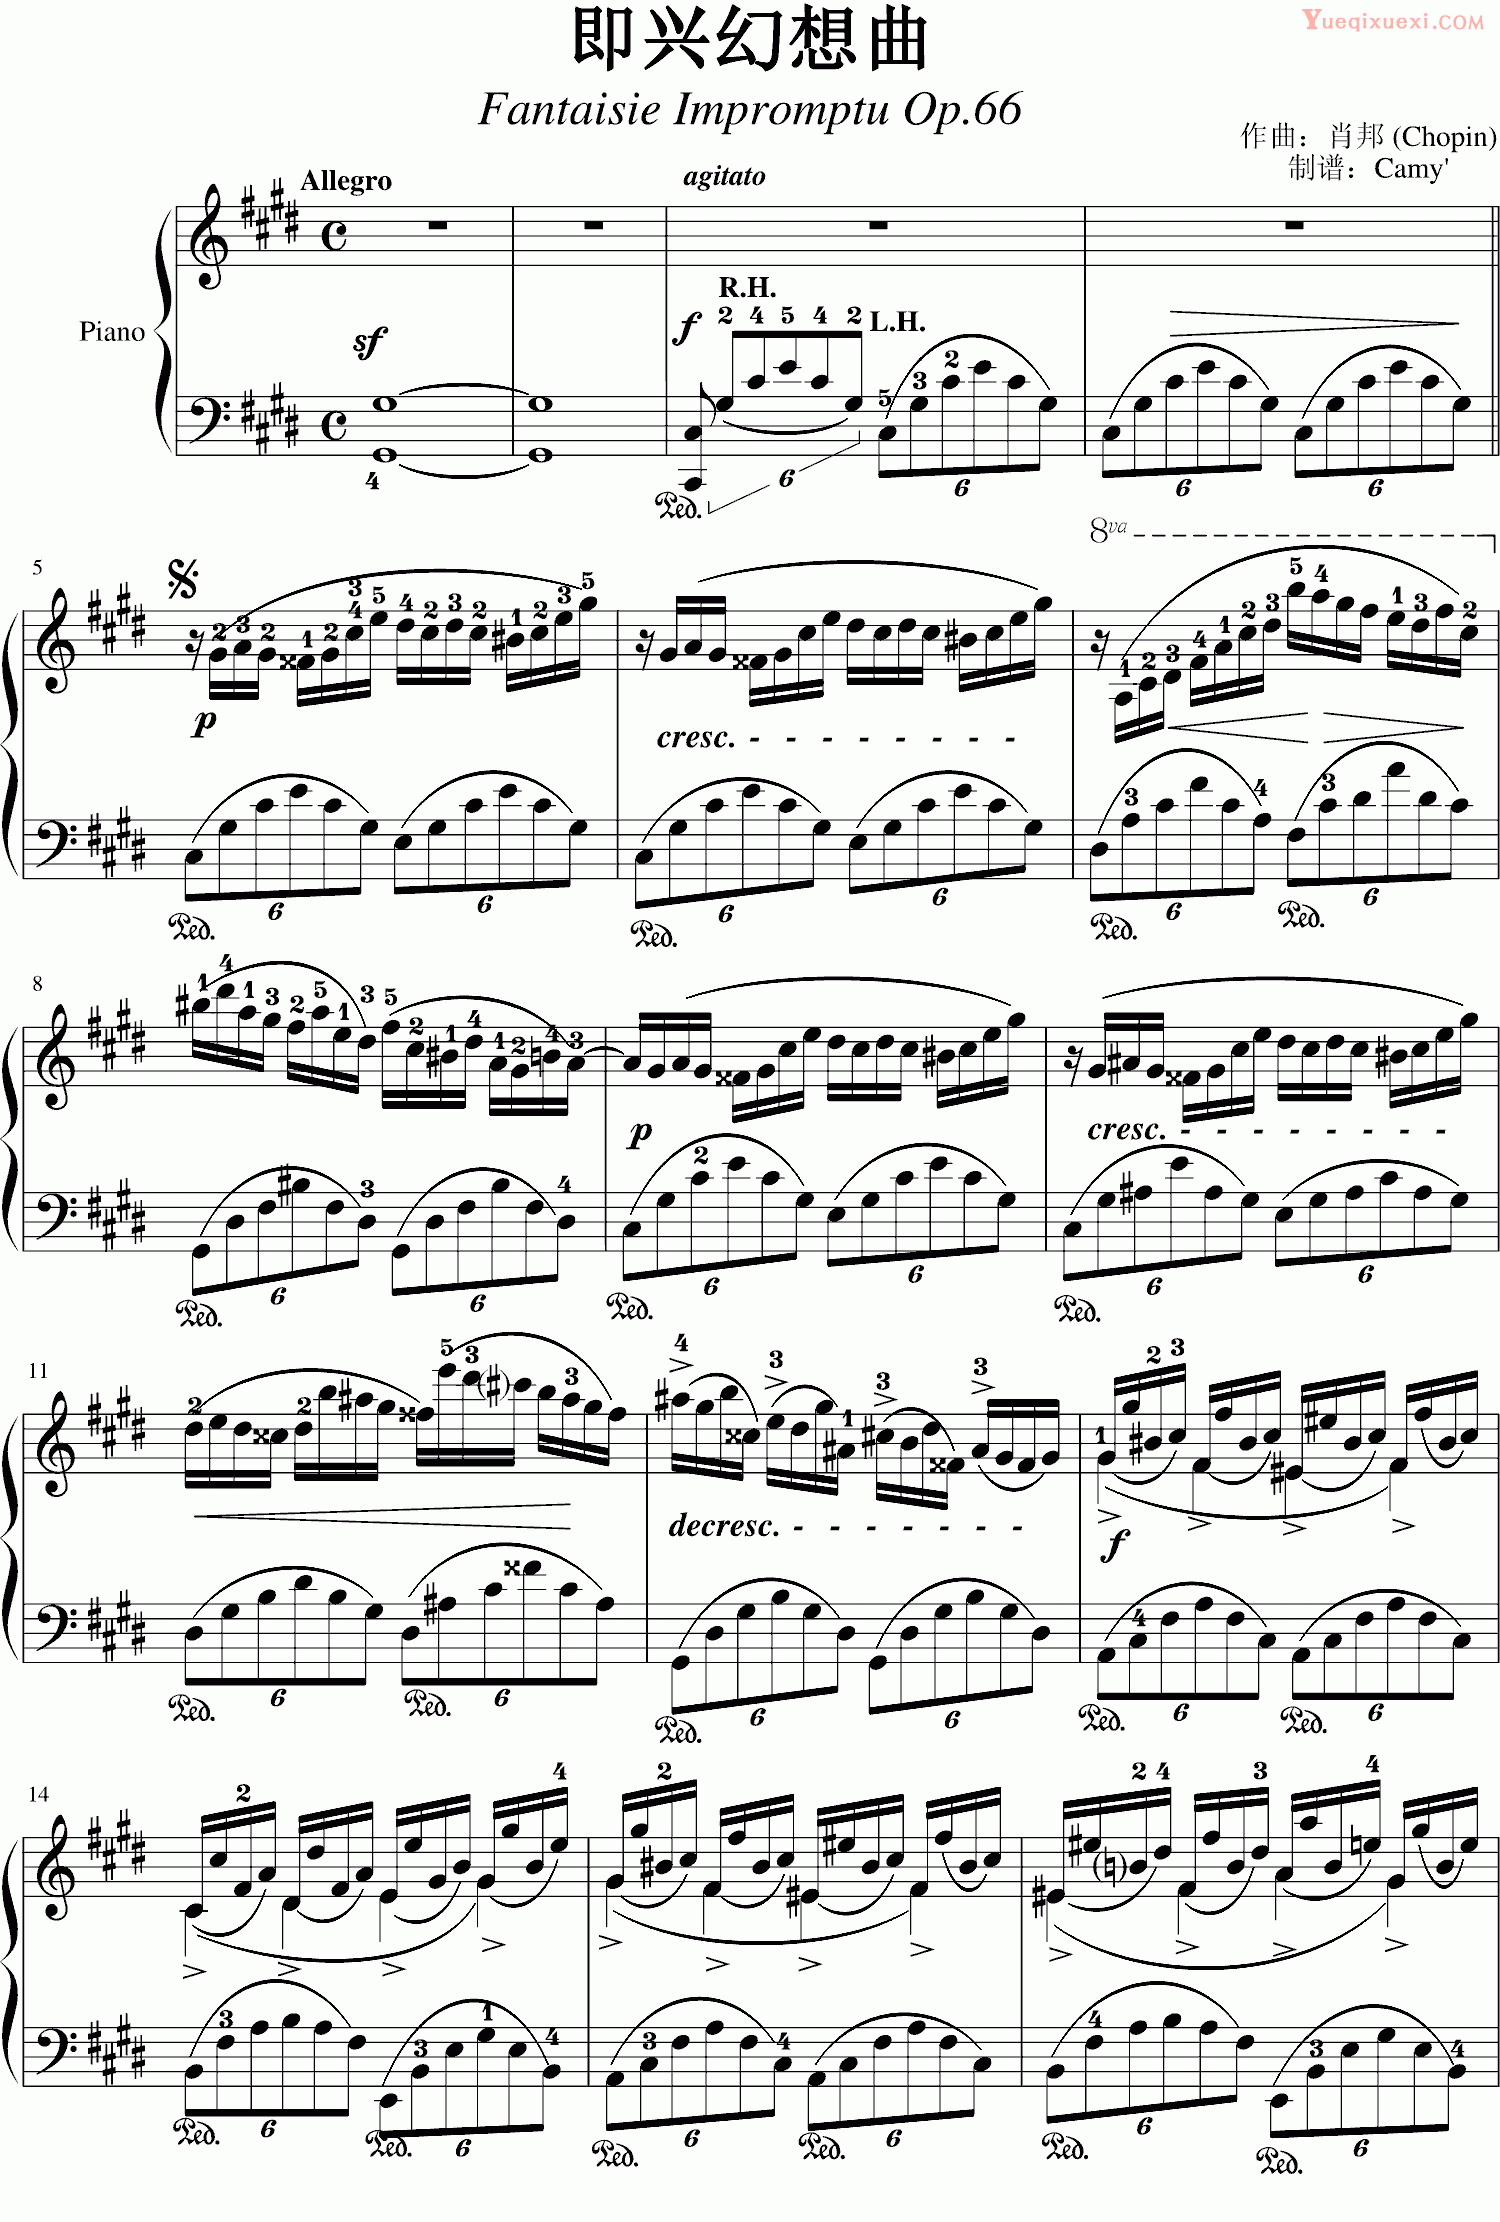 肖邦 chopin 即兴幻想曲 带指法Op.66 钢琴谱